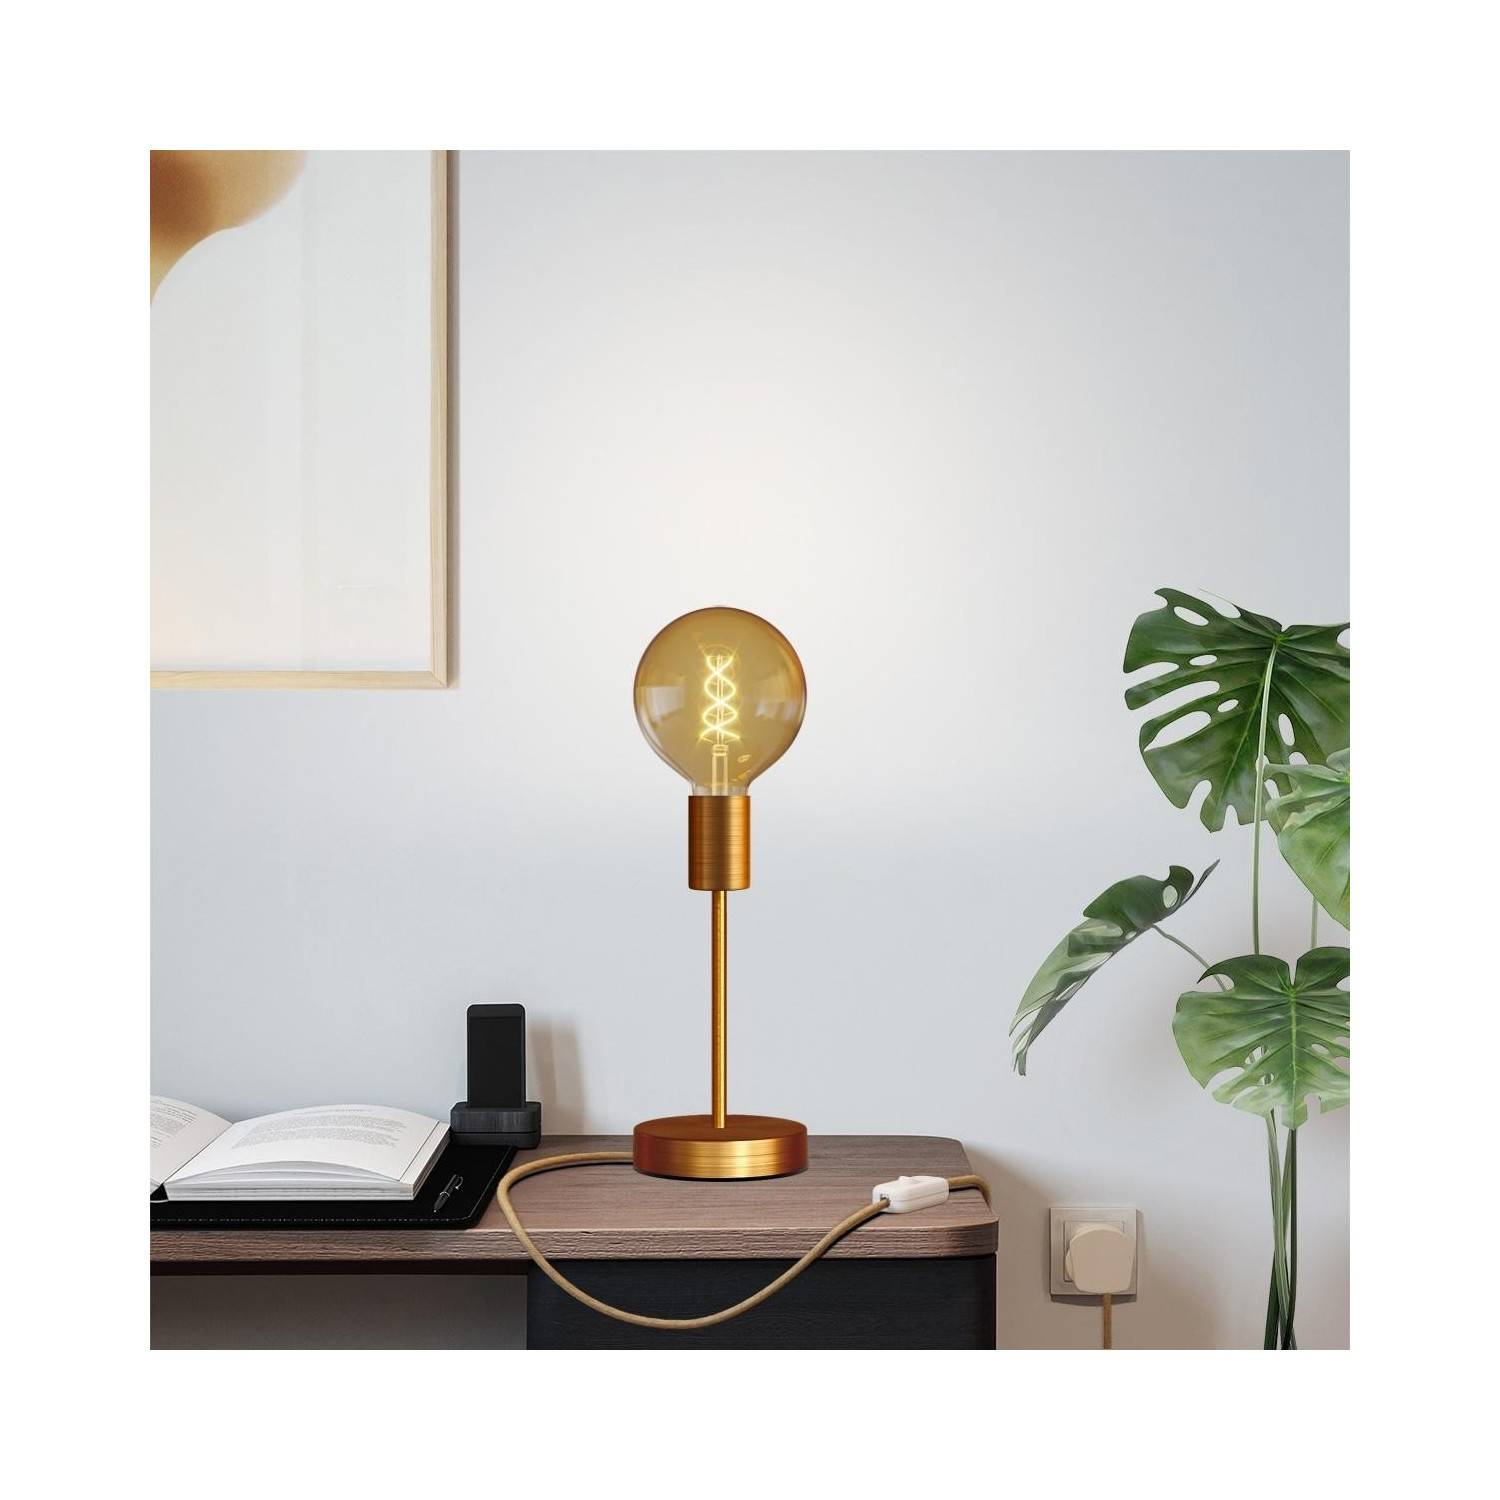 Alzaluce Globo Metal Table Lamp with UK plug